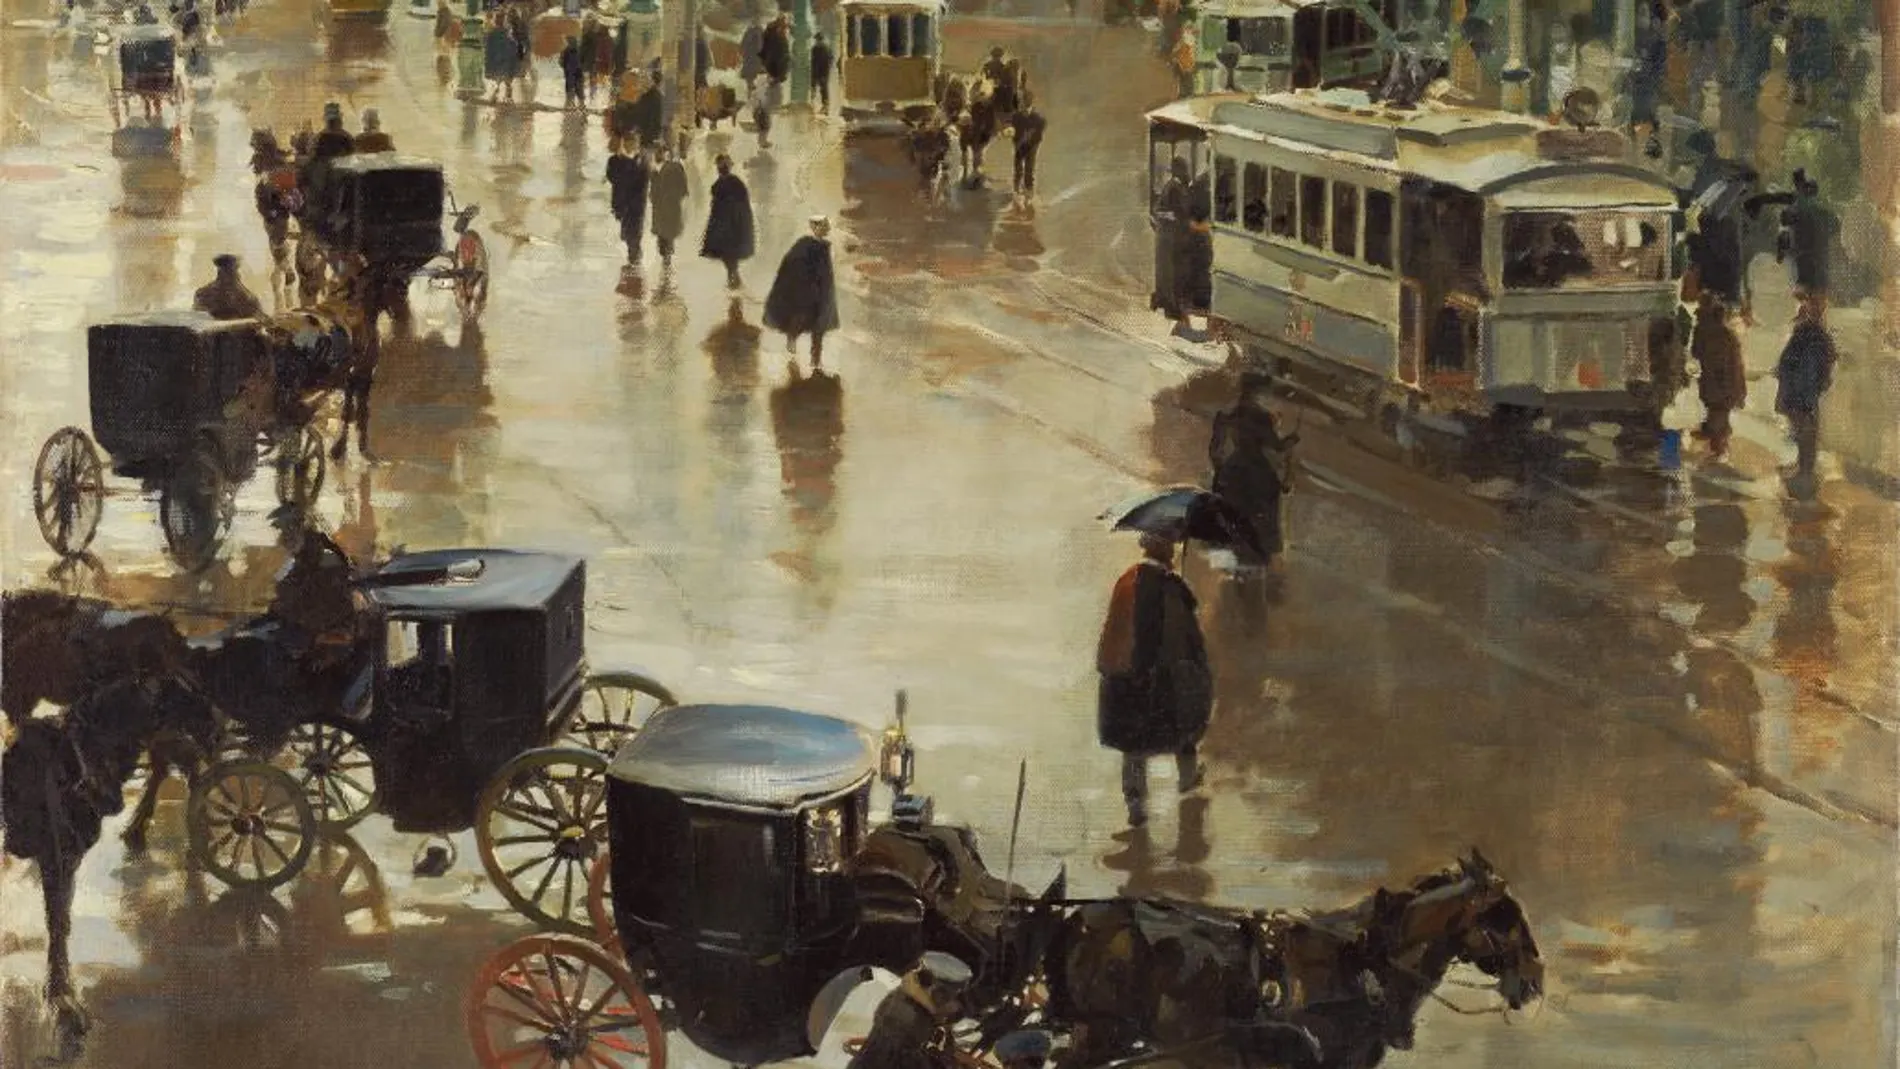 “Un día de lluvia en Madrid”, de Enrique Martínez Cubells. Año 1902